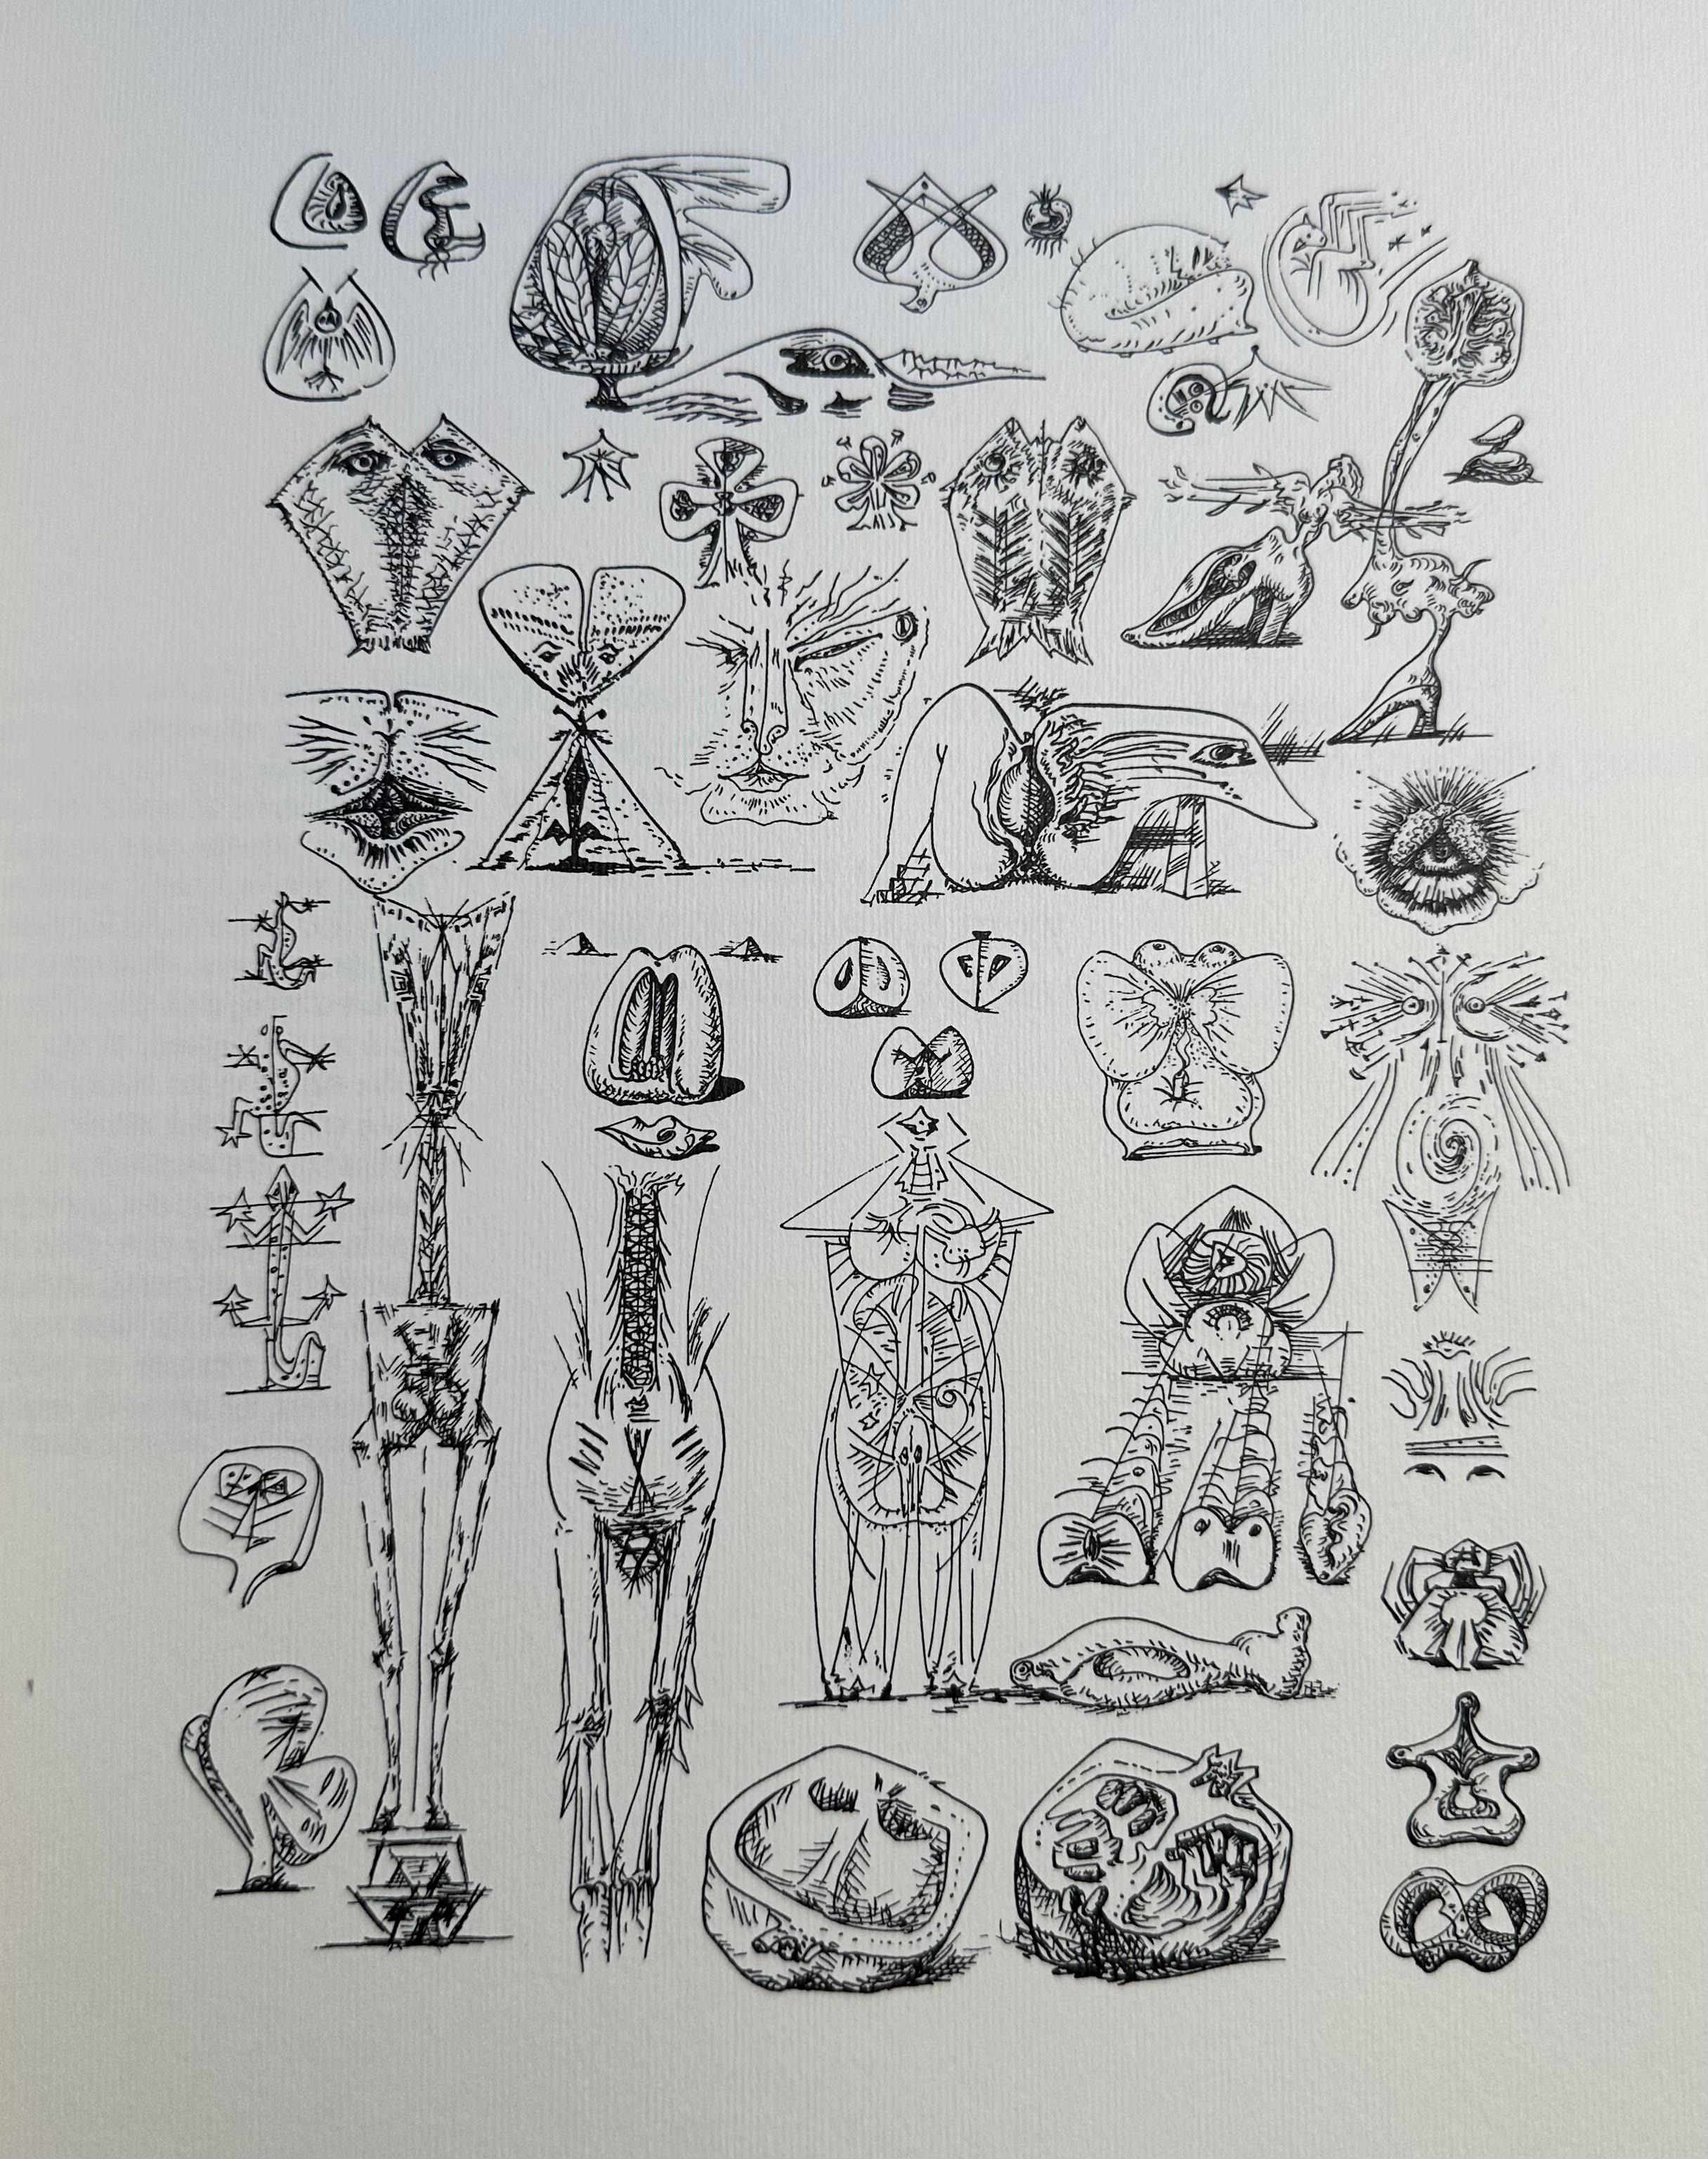 Nachdruck des Buches von Andre Masson aus dem Jahr 1939.  Gedruckt auf schwerem Velinpapier.  30 Tafeln mit Schwarz-Weiß-Zeichnungen.